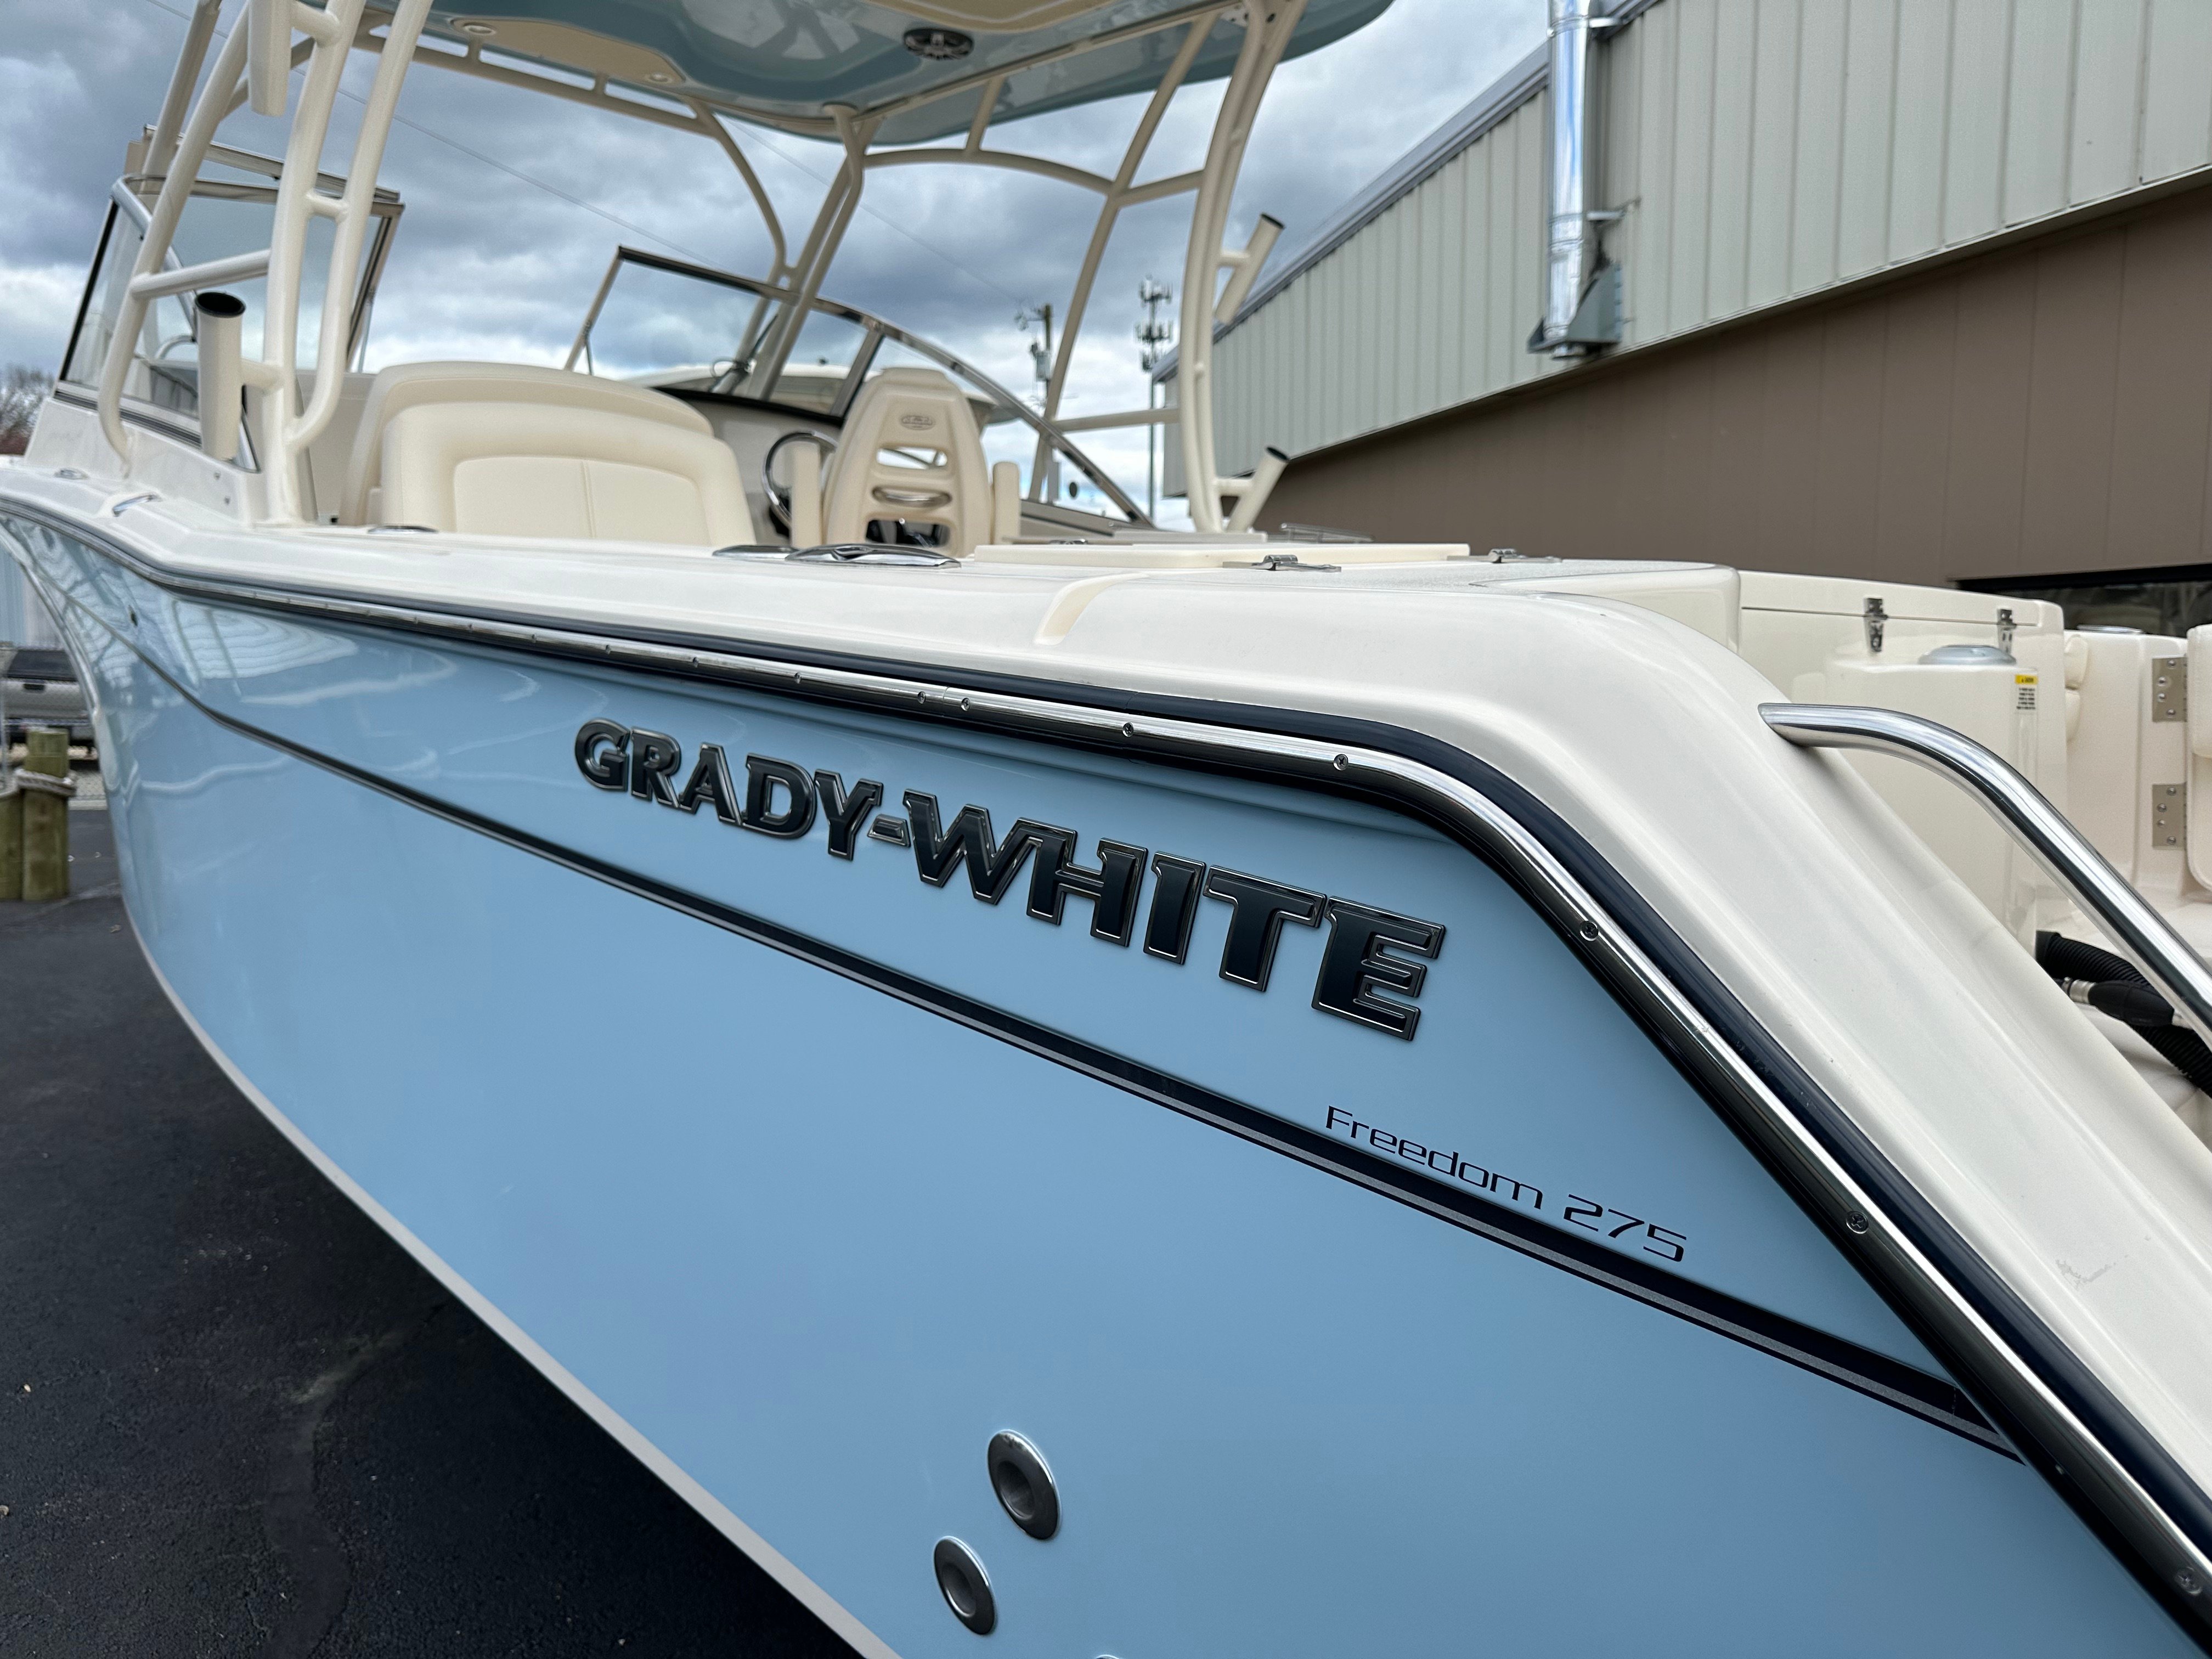 Grady-White 275 Freedom